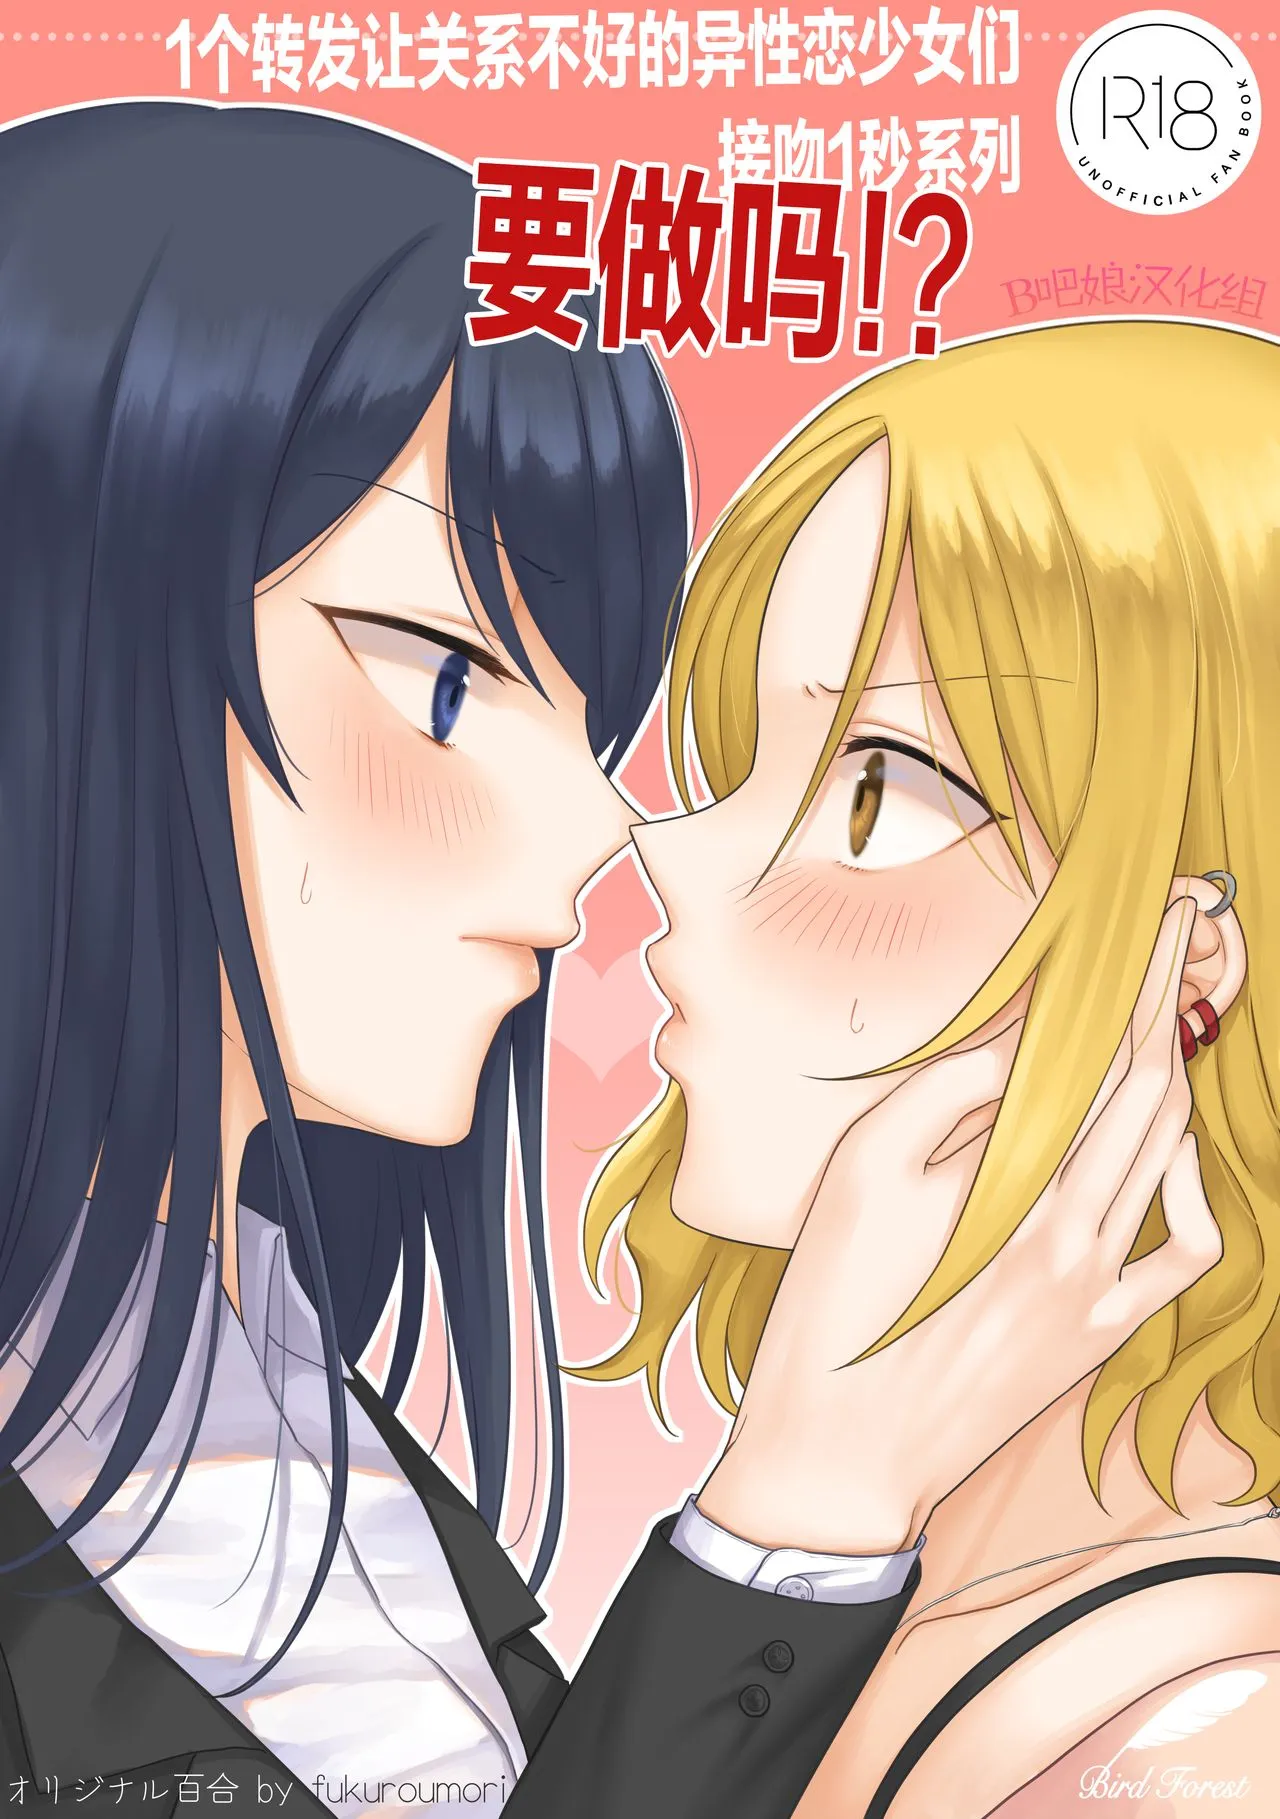 里番库漫画之1RTで仲悪いノンケ女子たちが1秒キスするシリーズセックスするの!?